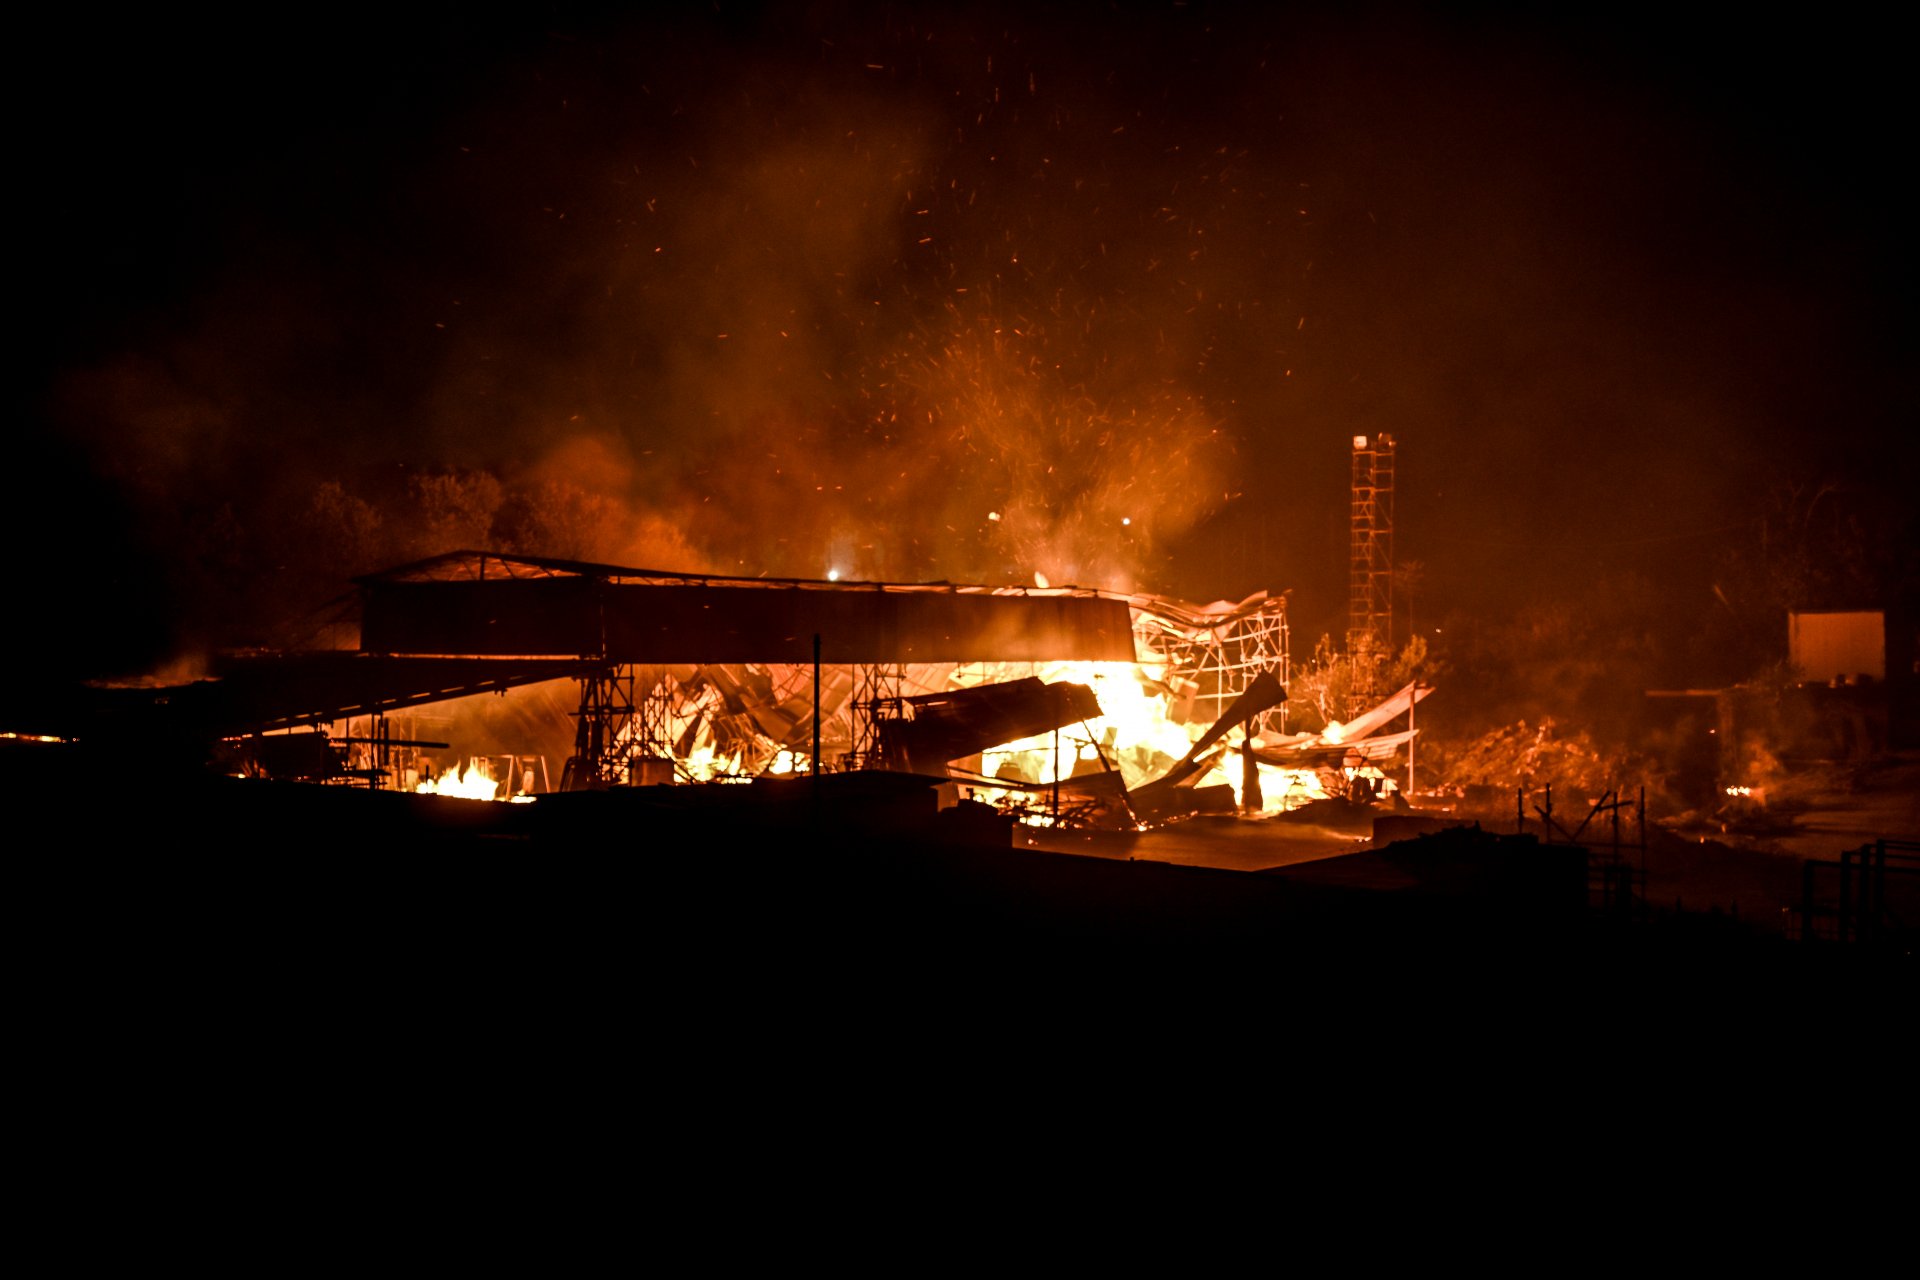  Изоставен навес, обхванат от пламъци. Това е едно от няколкото огнища, с които се бориха пожаарникарите във вечерта на 25 юли. Огънят бе подхранван и от силни ветрове в провинция Катания. 